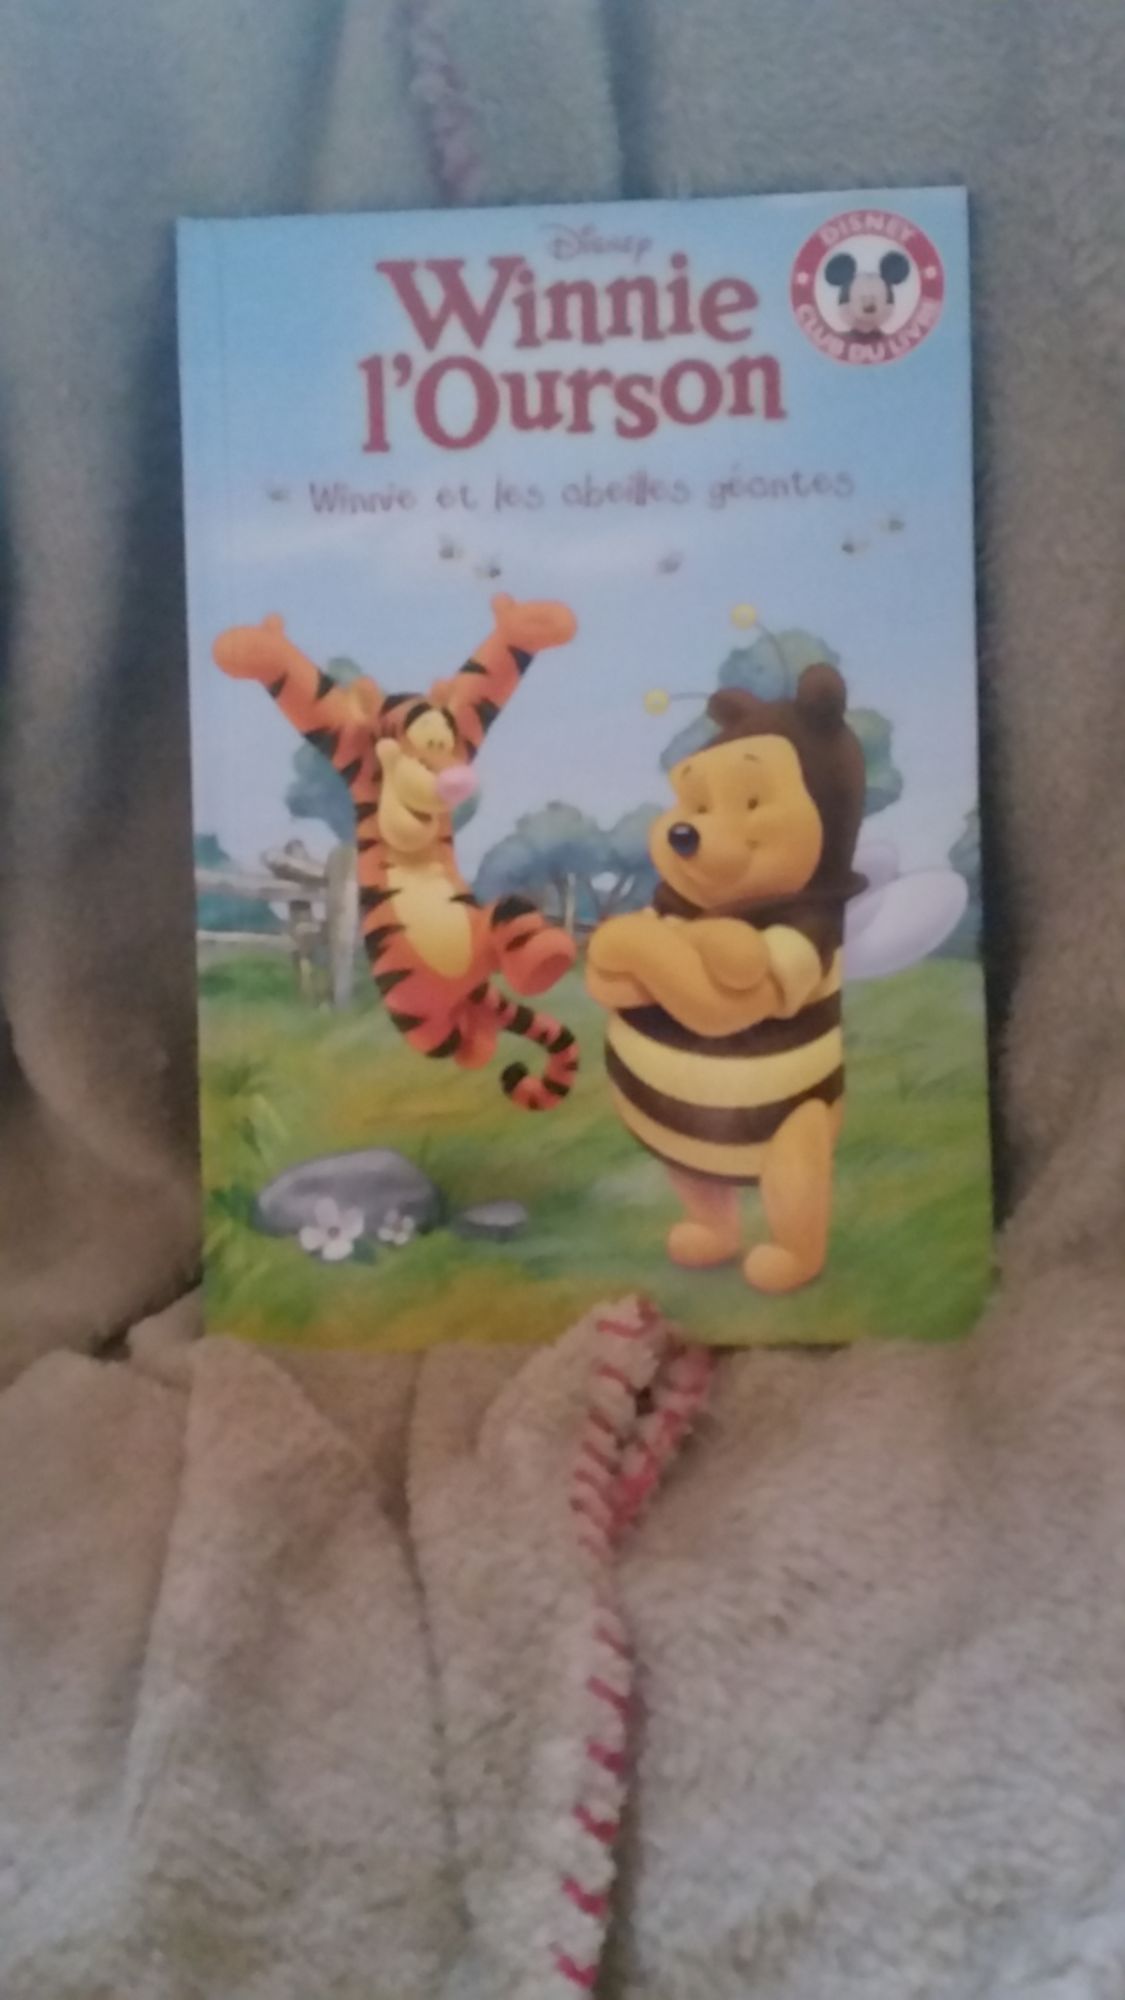 Winnie L'Ourson et les abeilles géantes